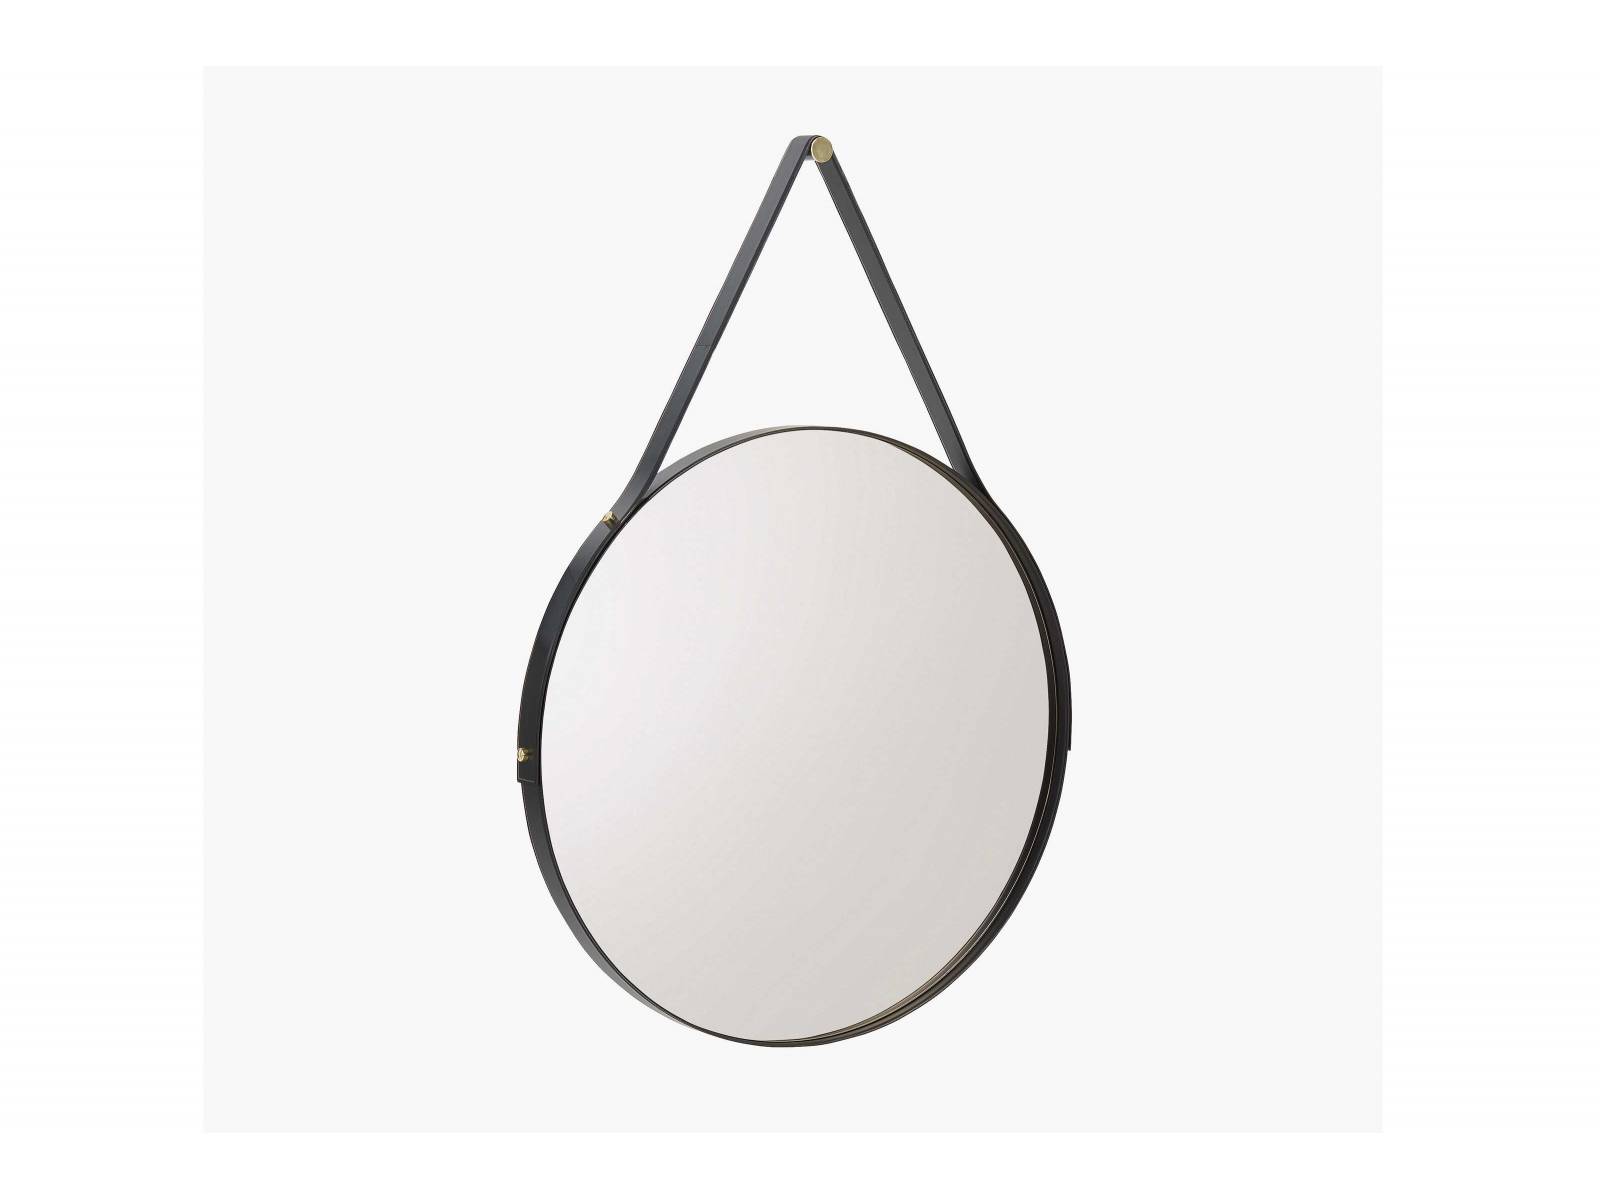 «Drop» ist ein eleganter Spiegel, der mit einem Durchmesser von 1.20 beziehungsweise 1.50 Metern eine komplette Wand einnehmen kann. Ein Riemen aus Leder umspannt die bronzierte Fassung und dient als Aufhänger. In Braun und Schwarz erhältlich. POLIFORM.